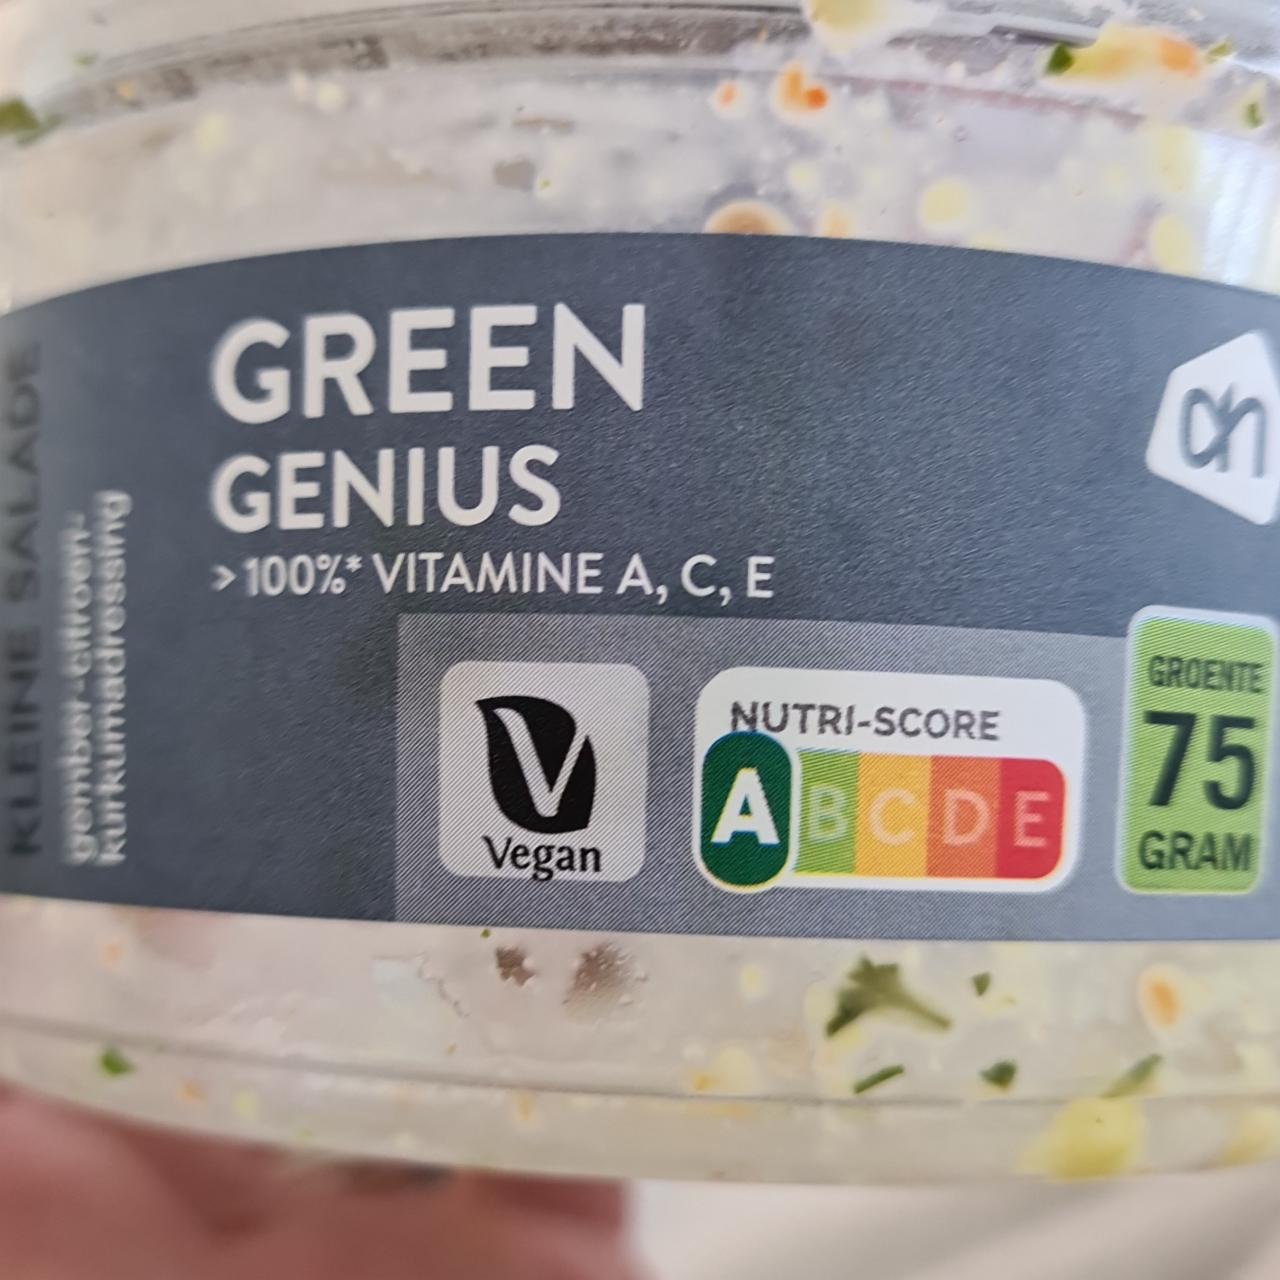 Fotografie - Green genius salade Albert Heijn